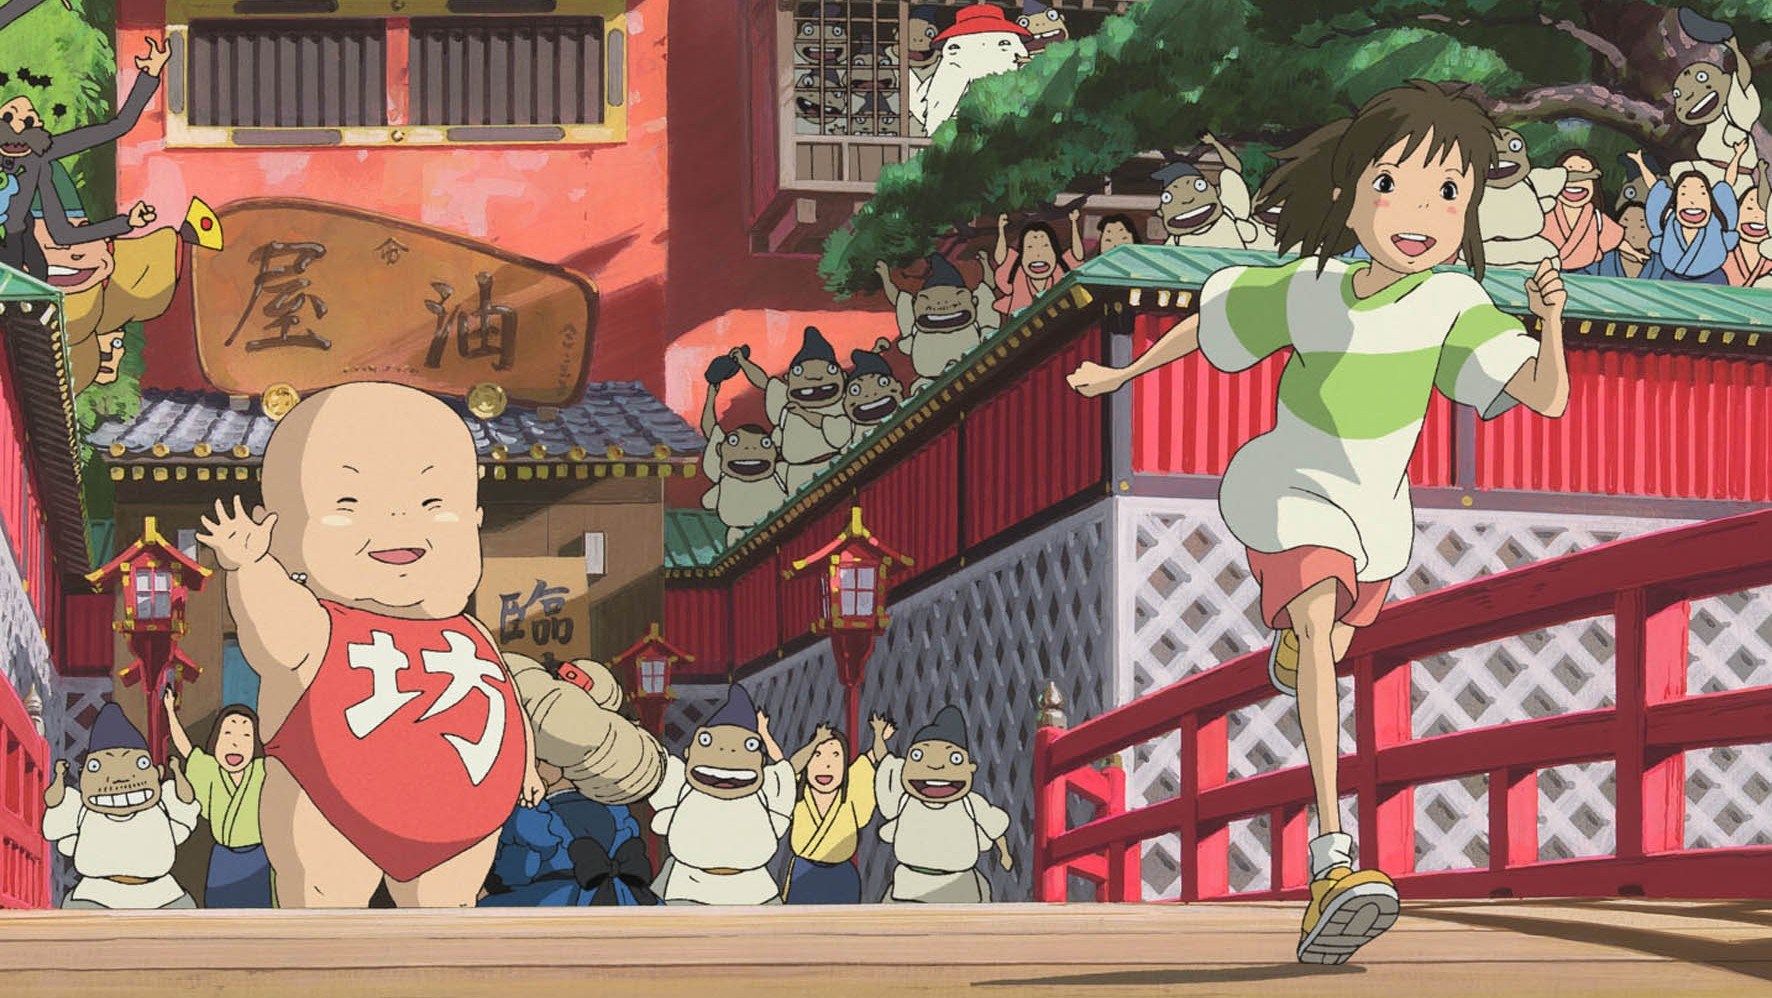 Huy hiệu Anime Chihiro hoạt hình Vùng đất linh hồn - Giá Tiki khuyến mãi:  10,000đ - Mua ngay! - Tư vấn mua sắm & tiêu dùng trực tuyến Bigomart